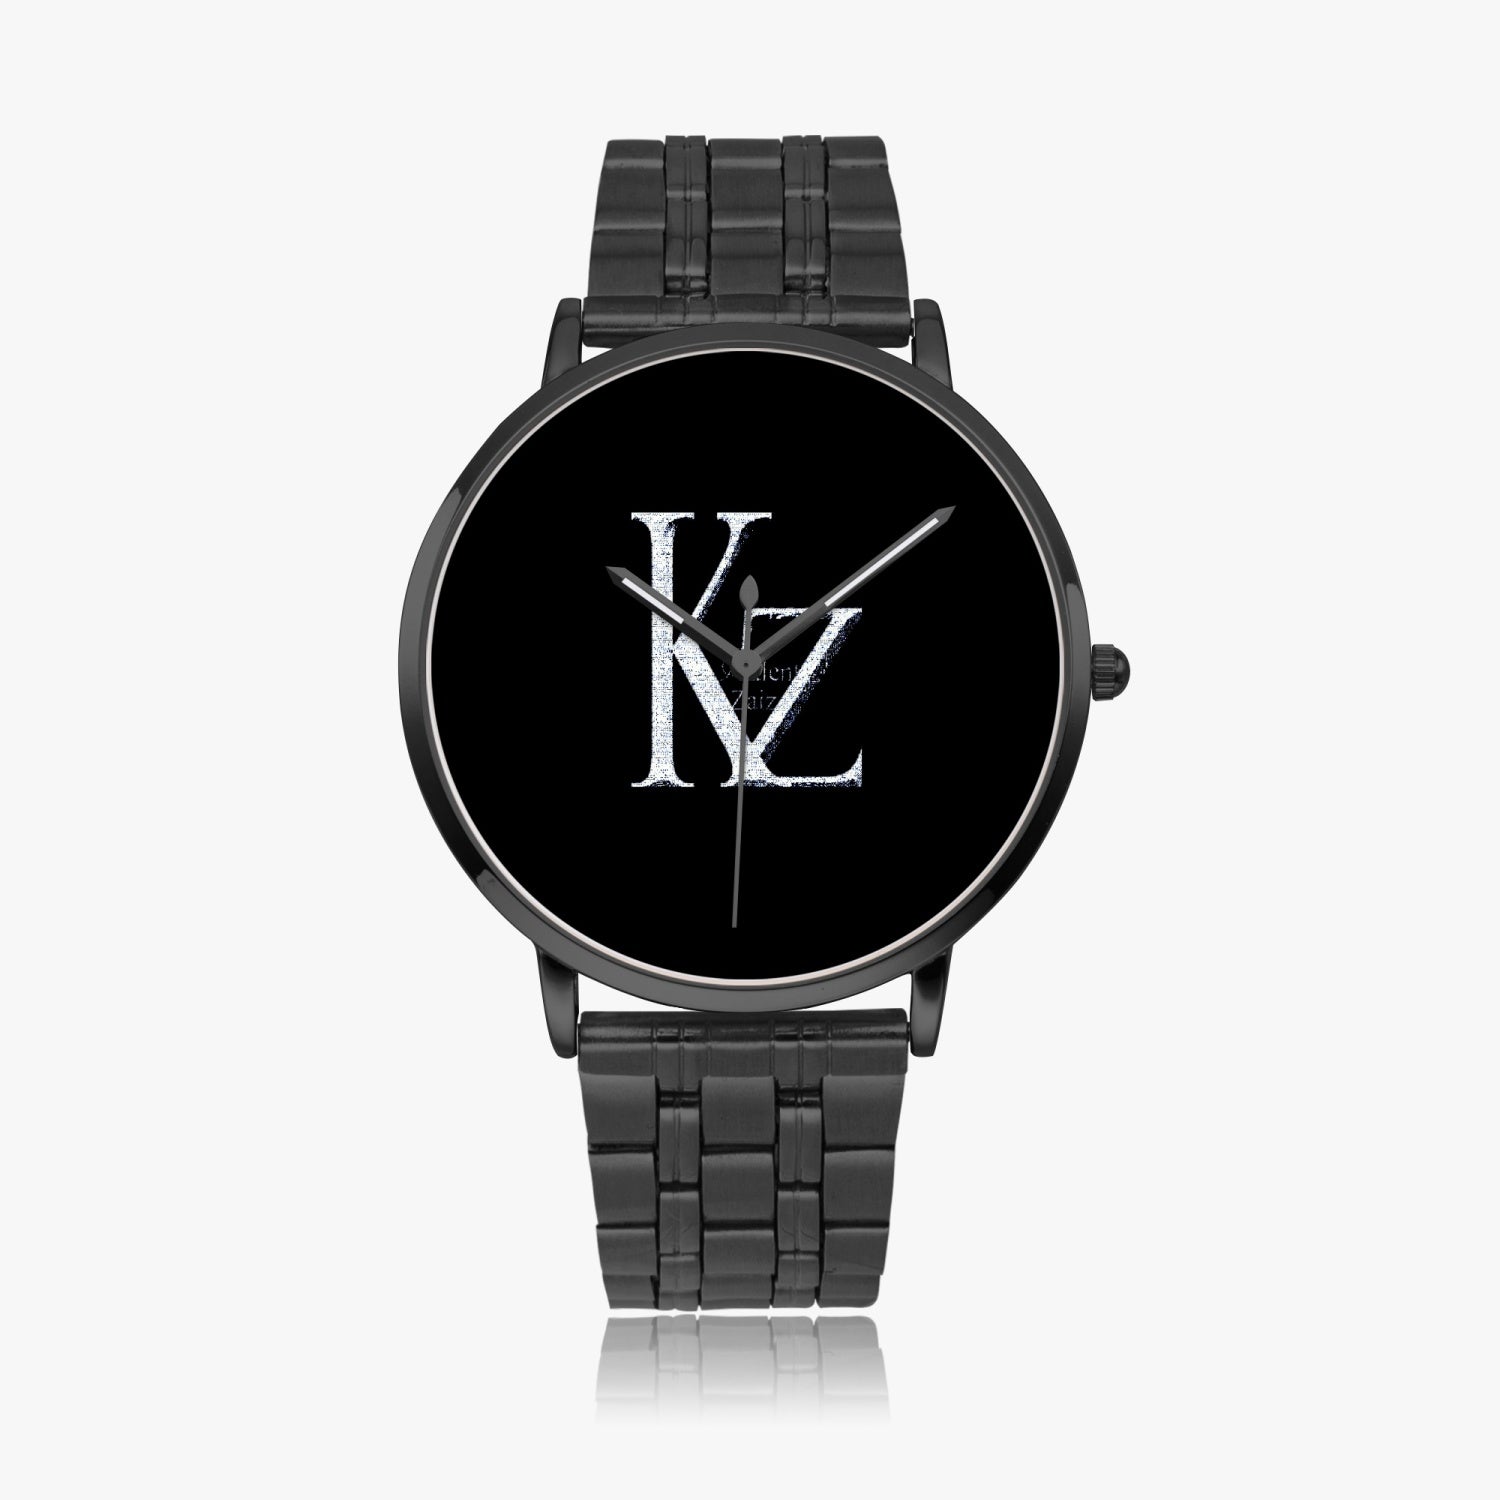 KZ Quartz watch